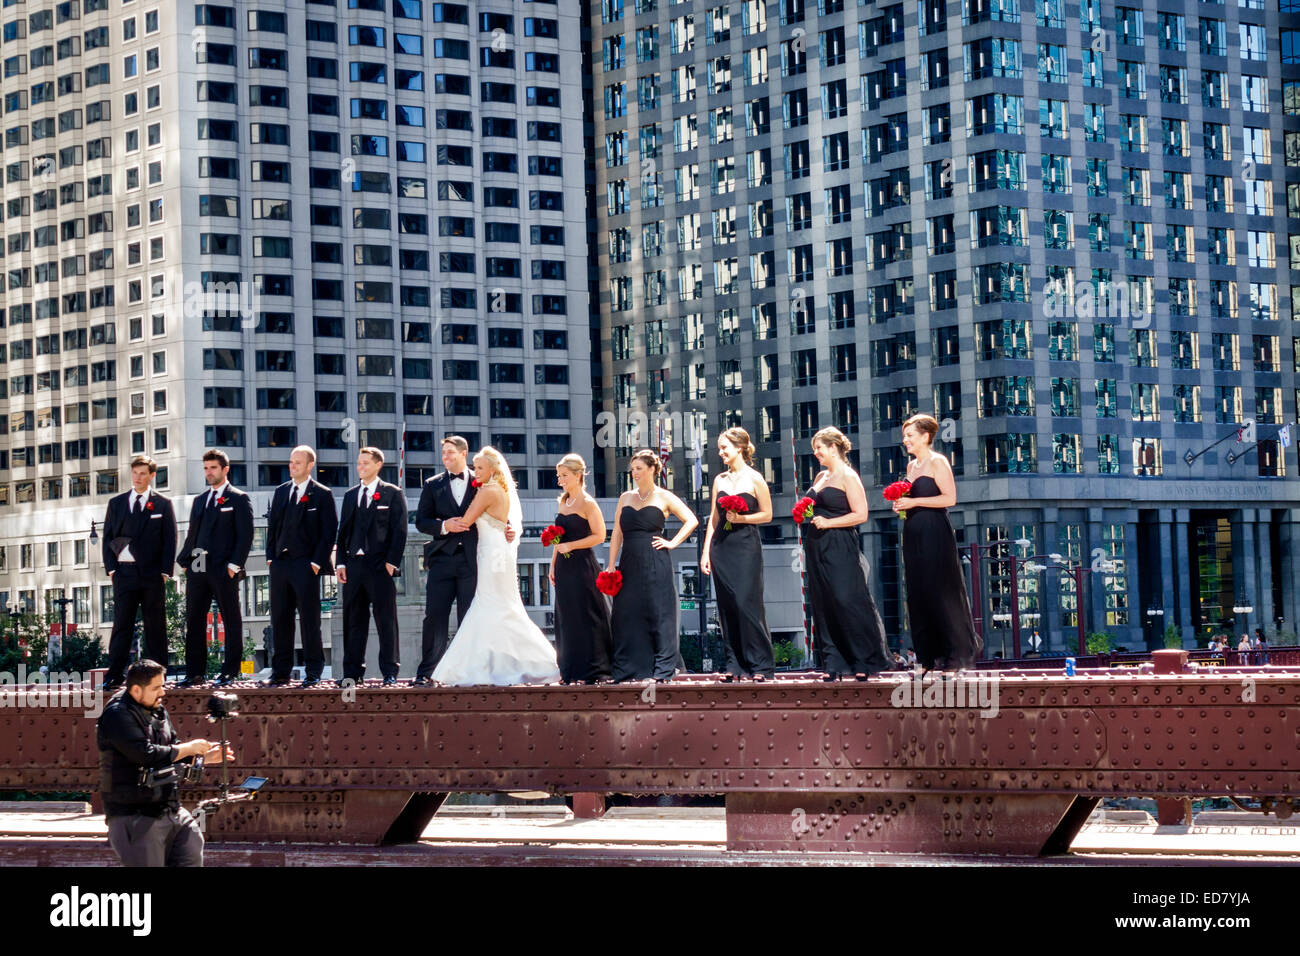 Chicago Illinois,North Wabash Avenue Bridge,mariage party,marié,mariée,groommen,bridesmaids,posant,centre-ville,gratte-ciel,bâtiments,visiteurs Voyage de travail Banque D'Images